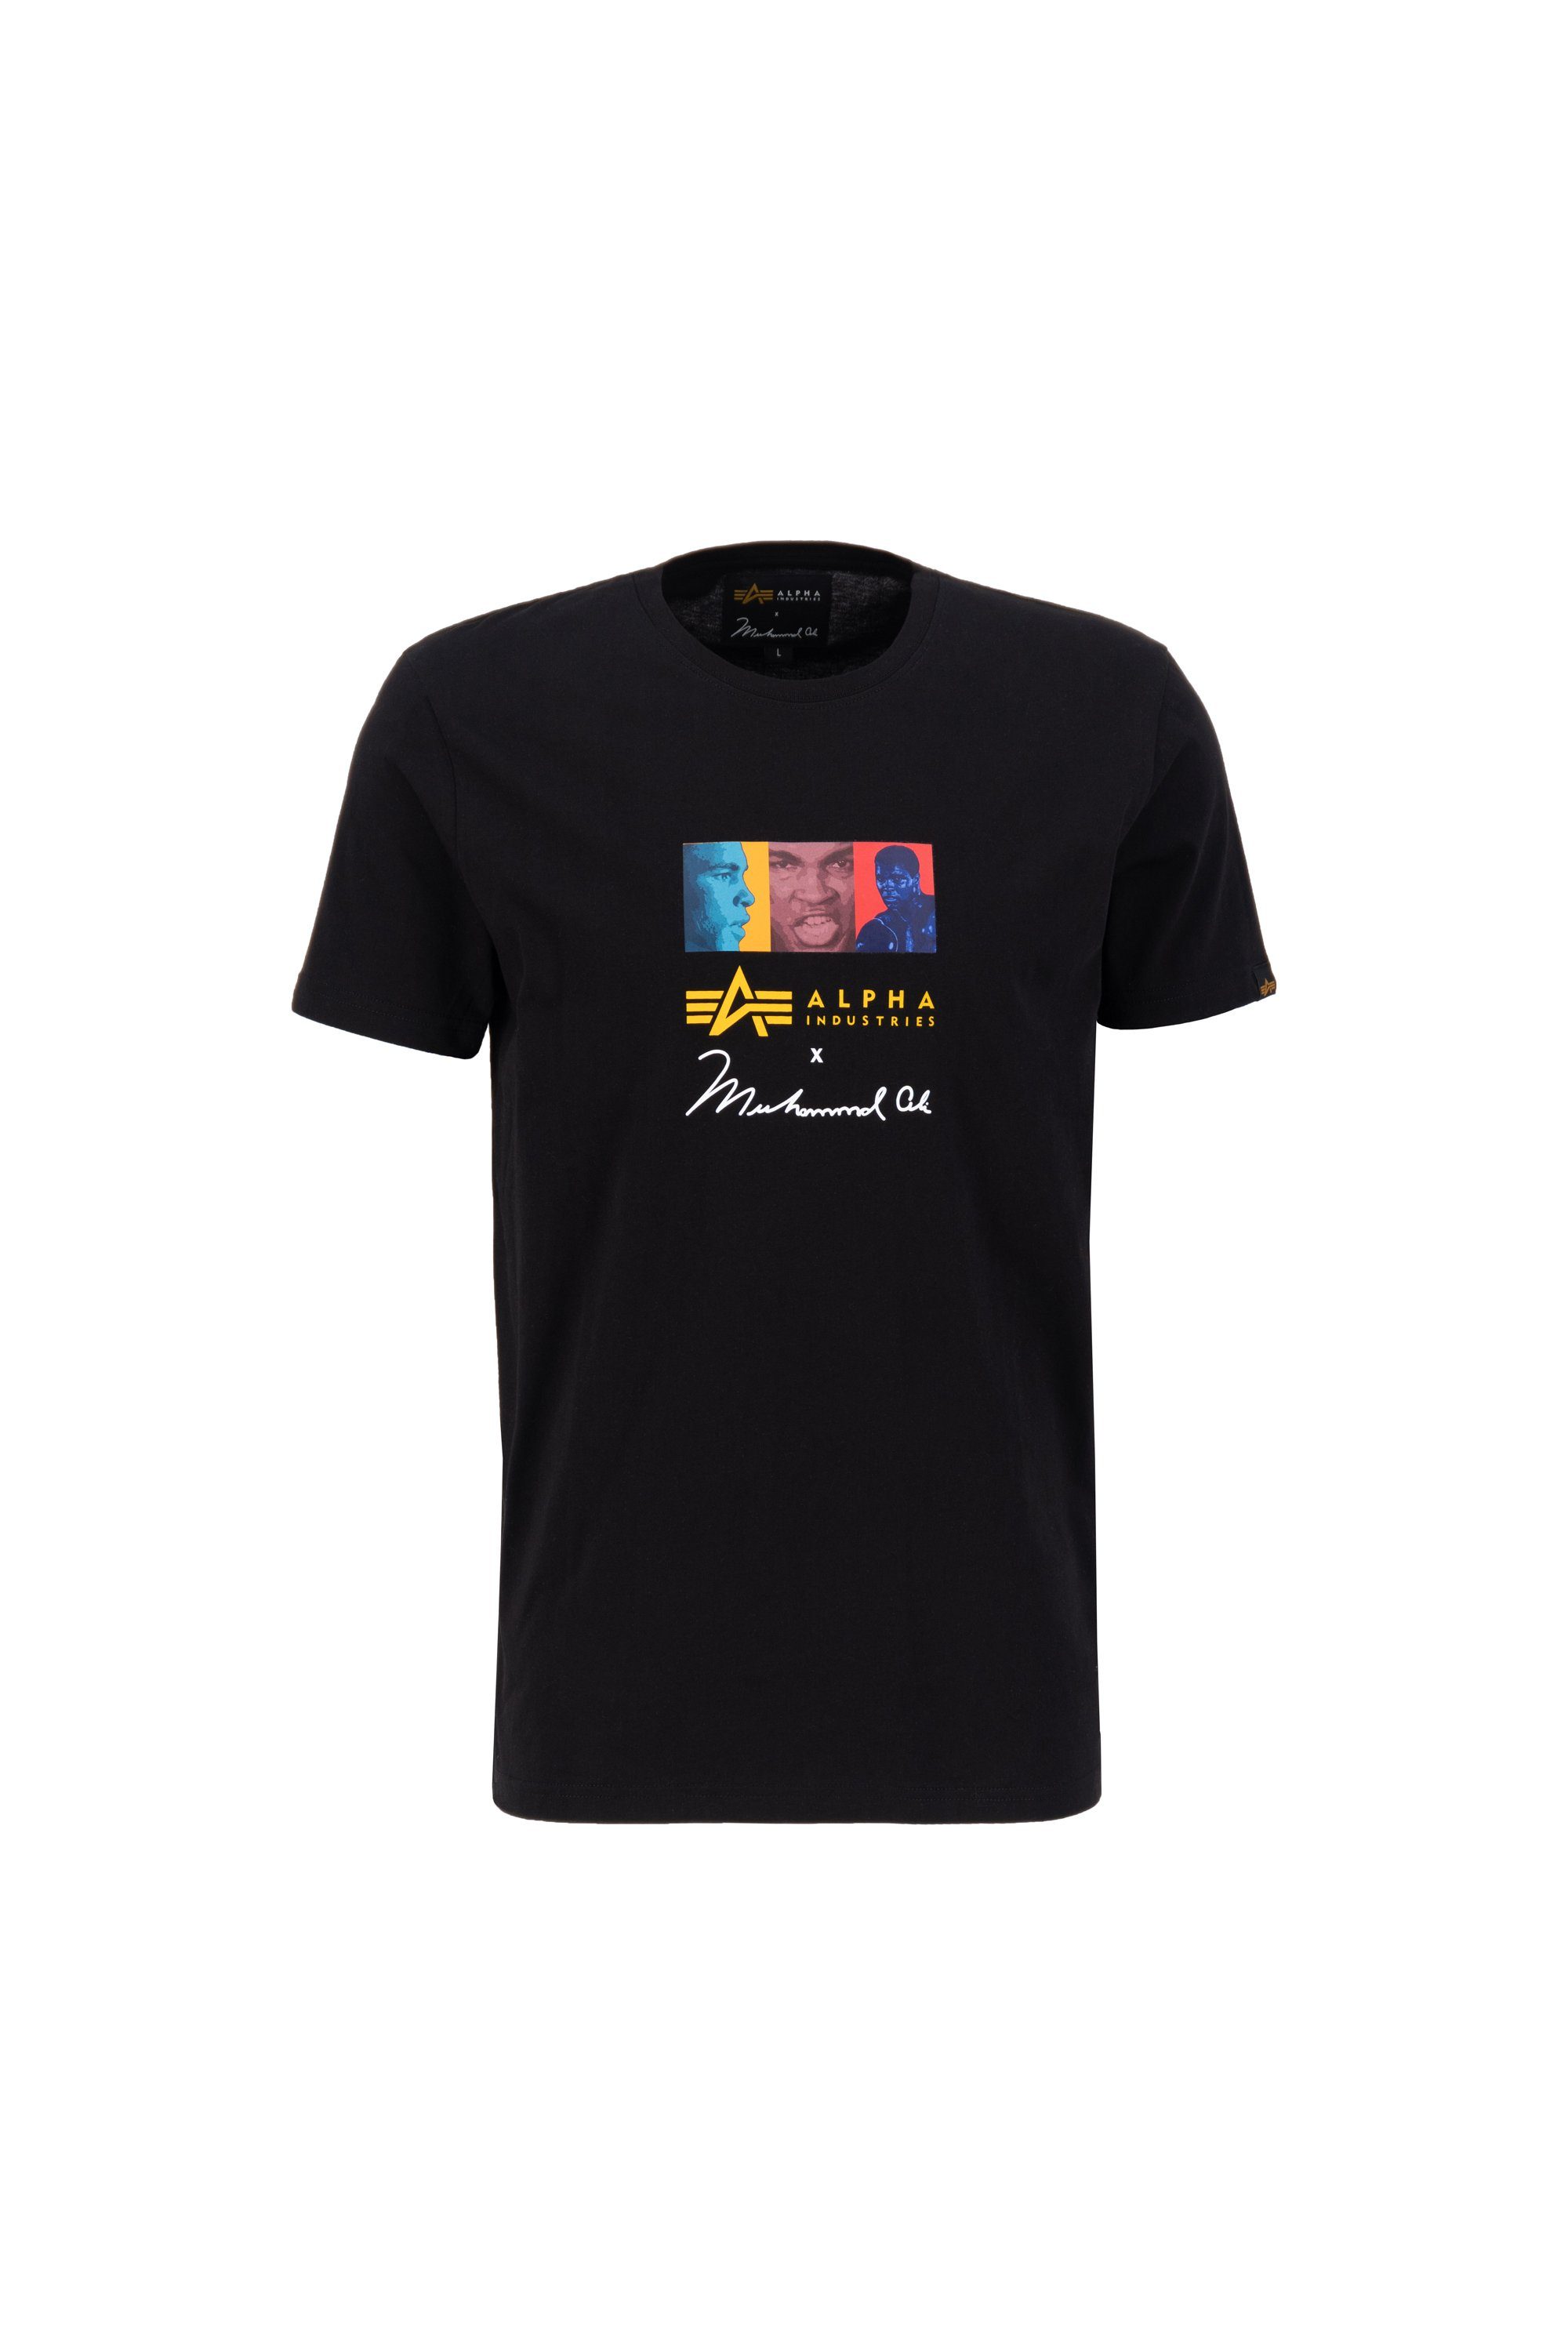 Alpha Industries T-Shirt Alpha Industries Men - T-Shirts Muhammad Ali Pop Art T black